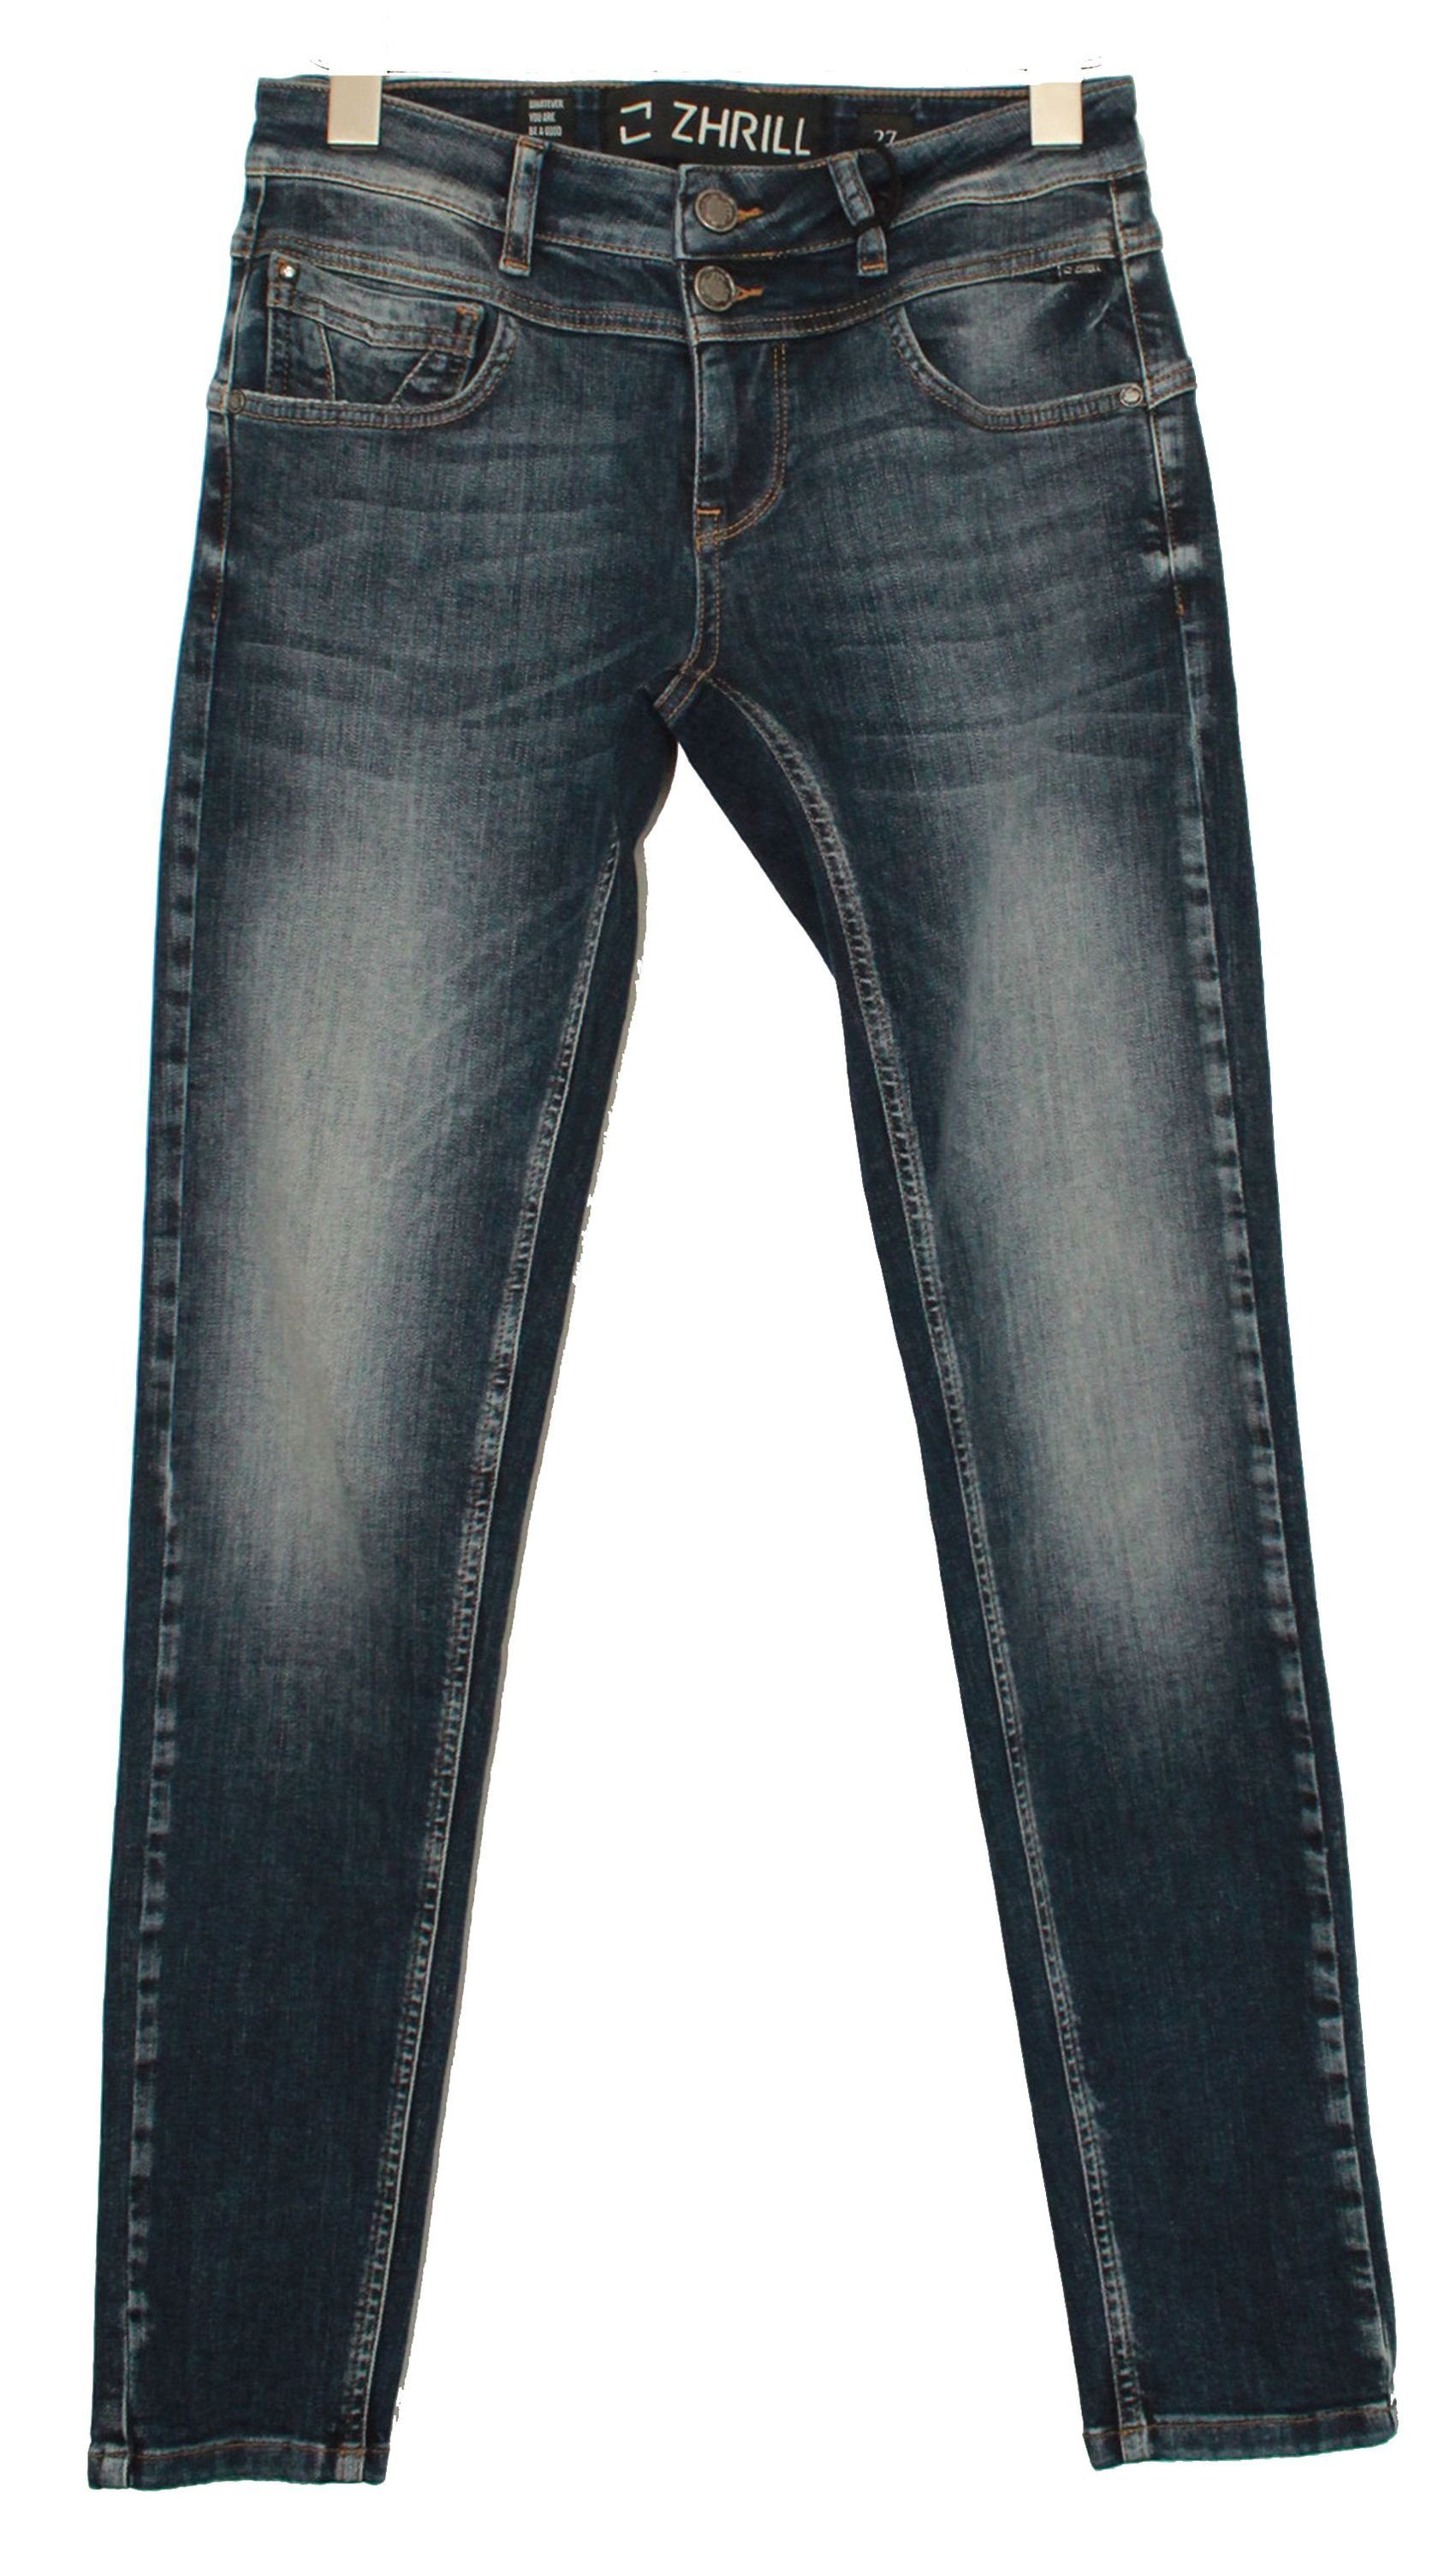 Damen Jeans Zhrill Skinny-fit-Jeans Jeans KELA BLUE Jeanshose Röhrenjeans 5 Pocket Vintage Skinny Fit Kela Blue